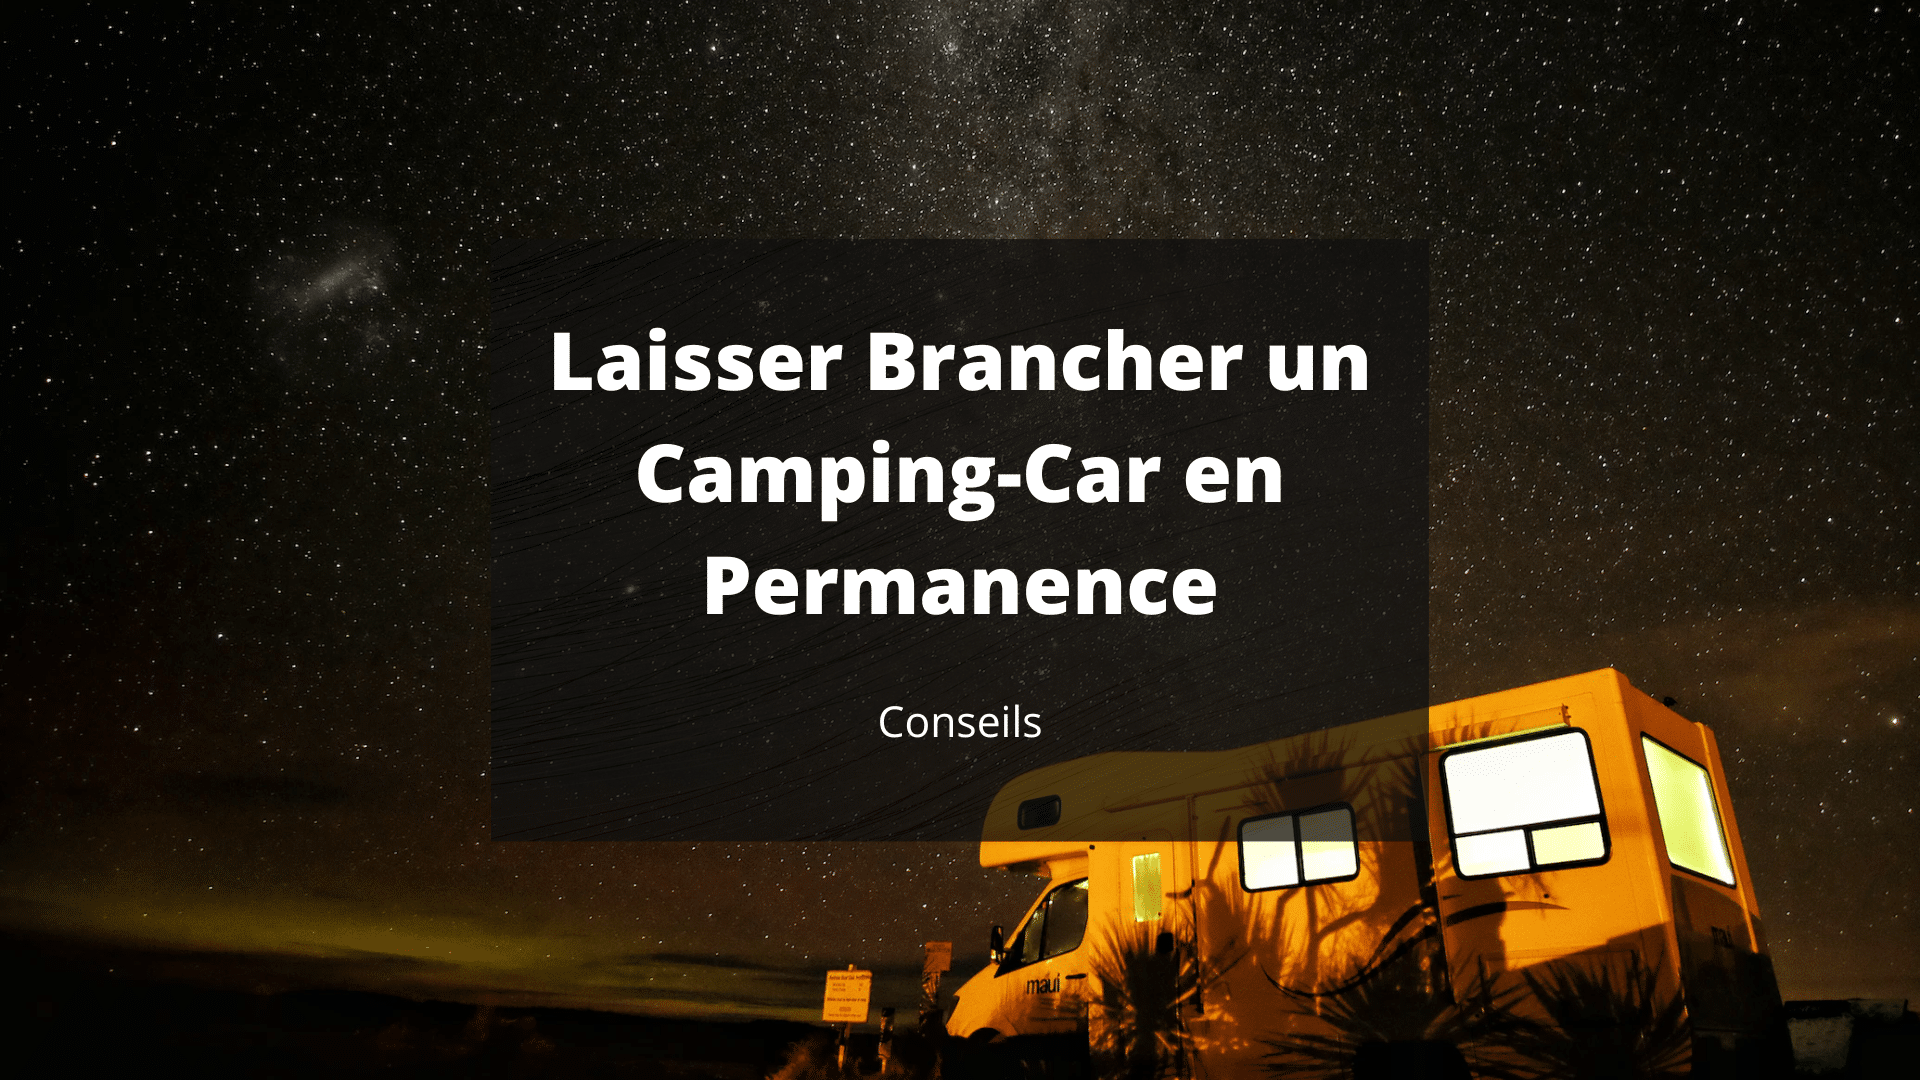 Laisser Brancher un Camping-Car en Permanence